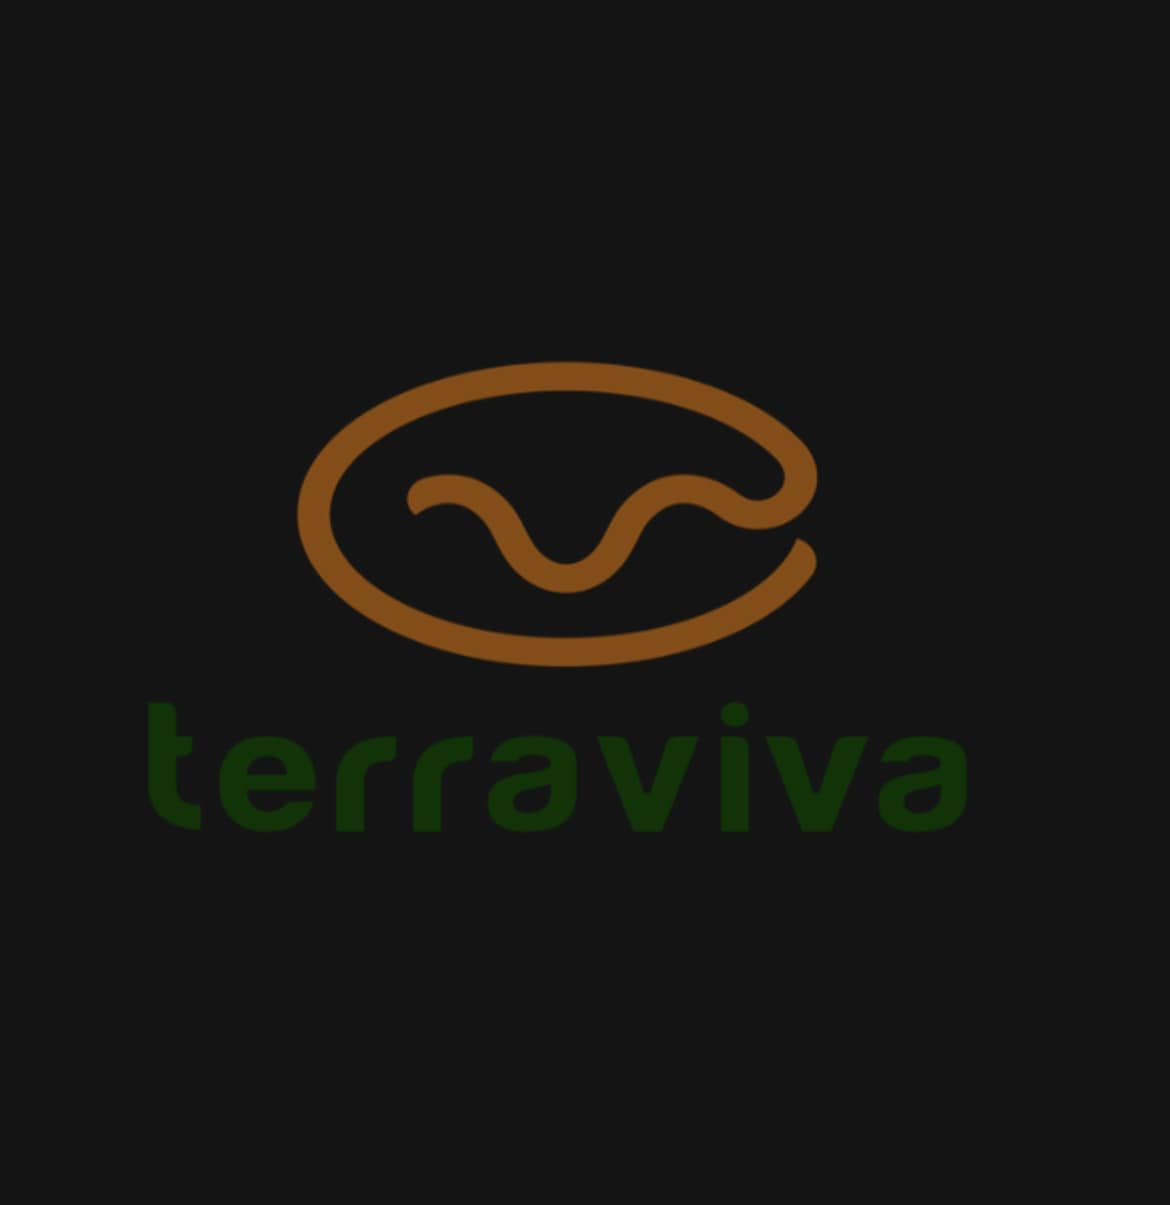 Canal Terraviva anuncia mudanças na programação a partir de 11 de setembro